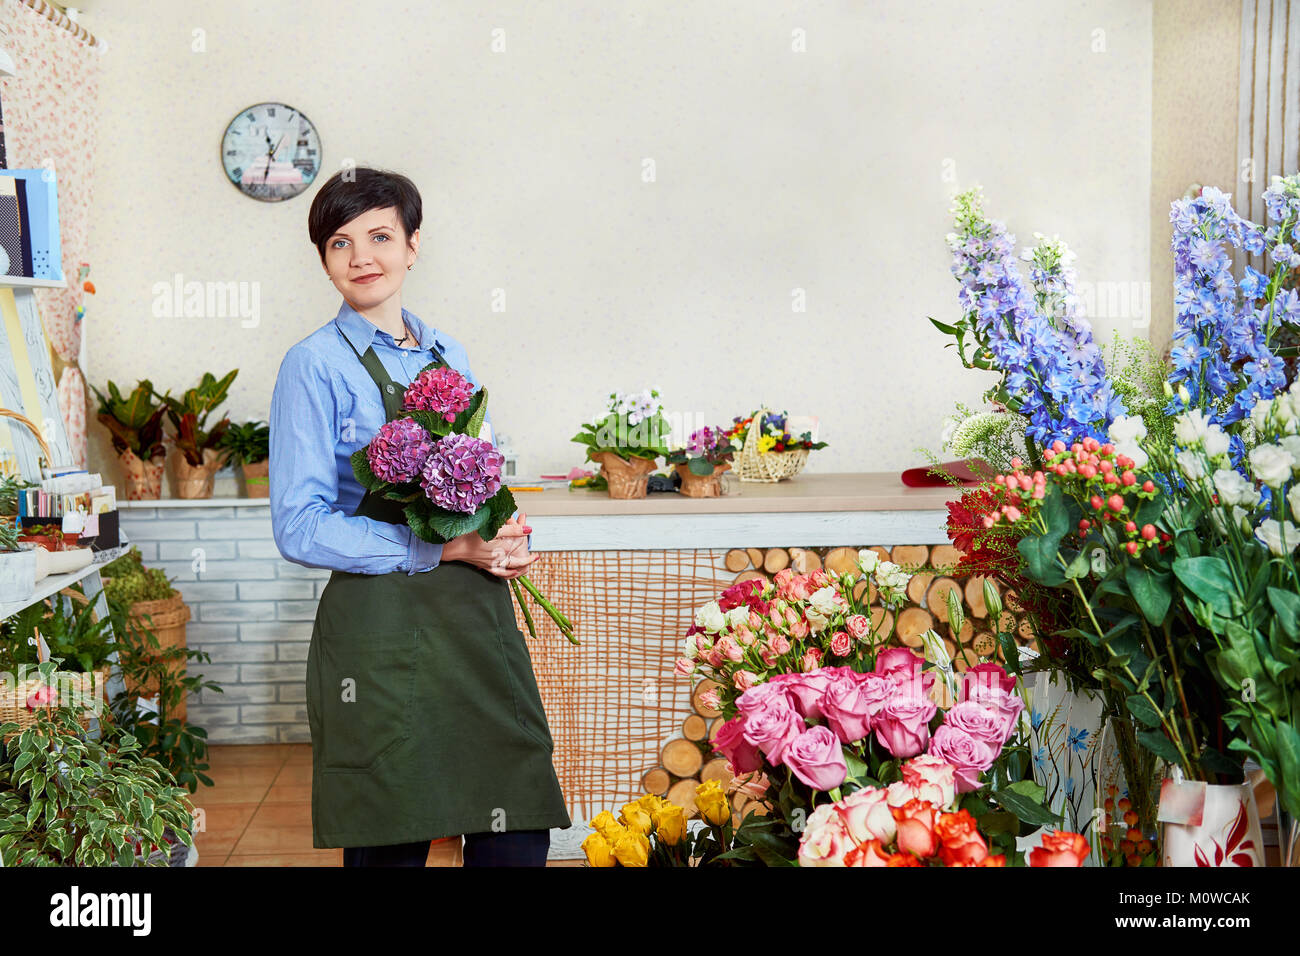 Petite Fleur d'affaires. Les femmes travaillant dans le magasin de fleurs. Place pour le texte ou l'ads Banque D'Images